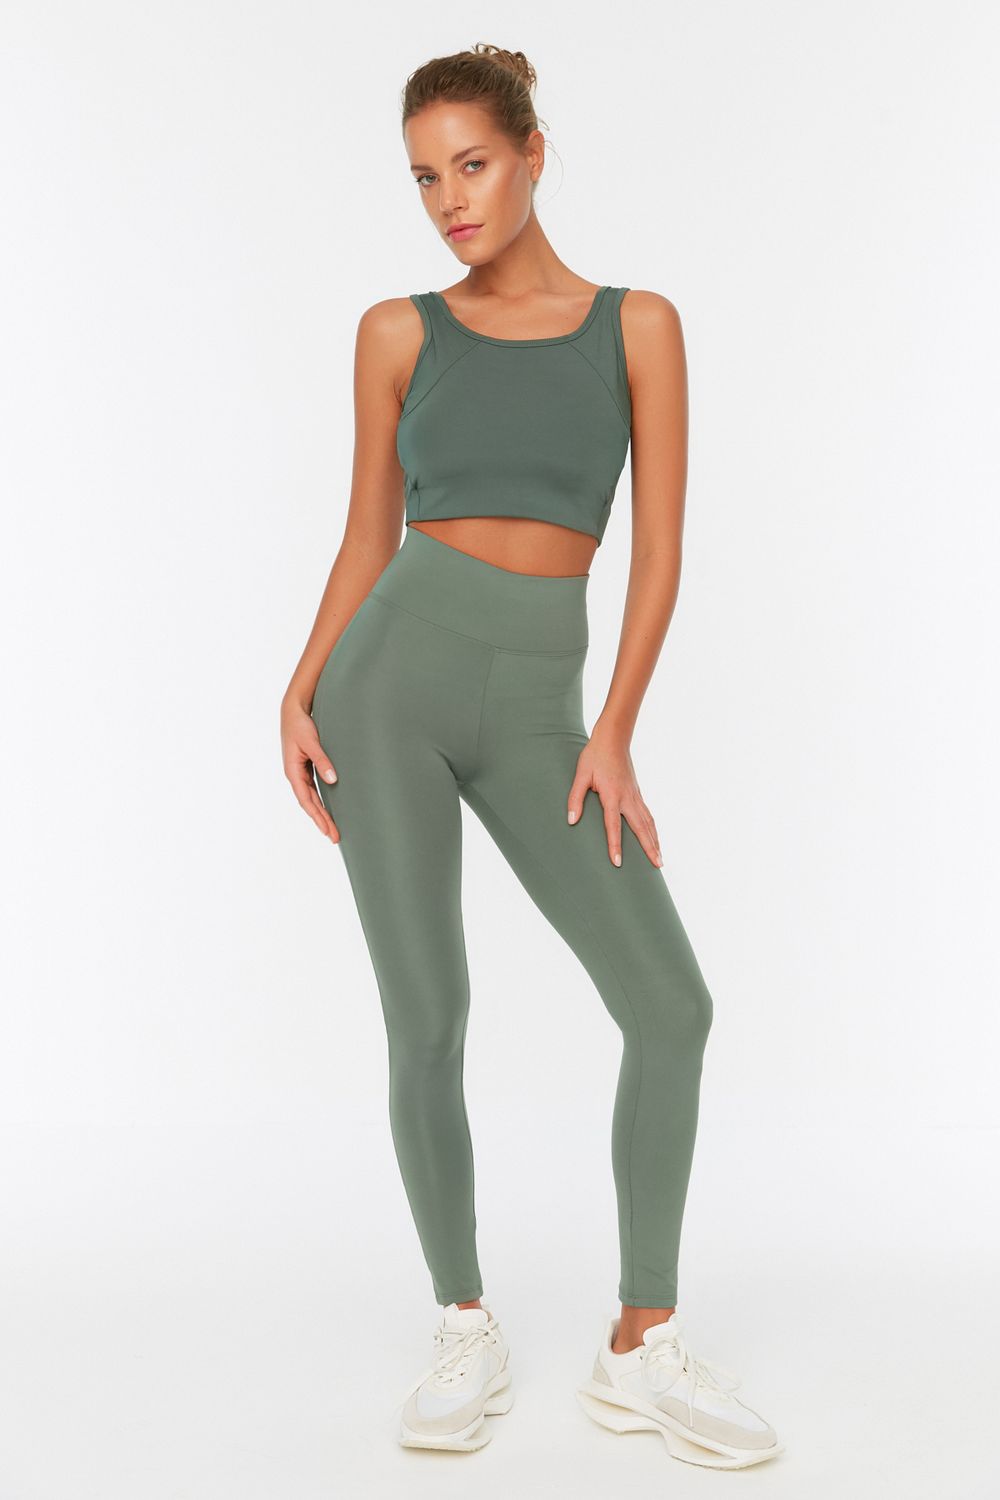 Plus Size Yoga Pant Set Triple Weave Crop Top